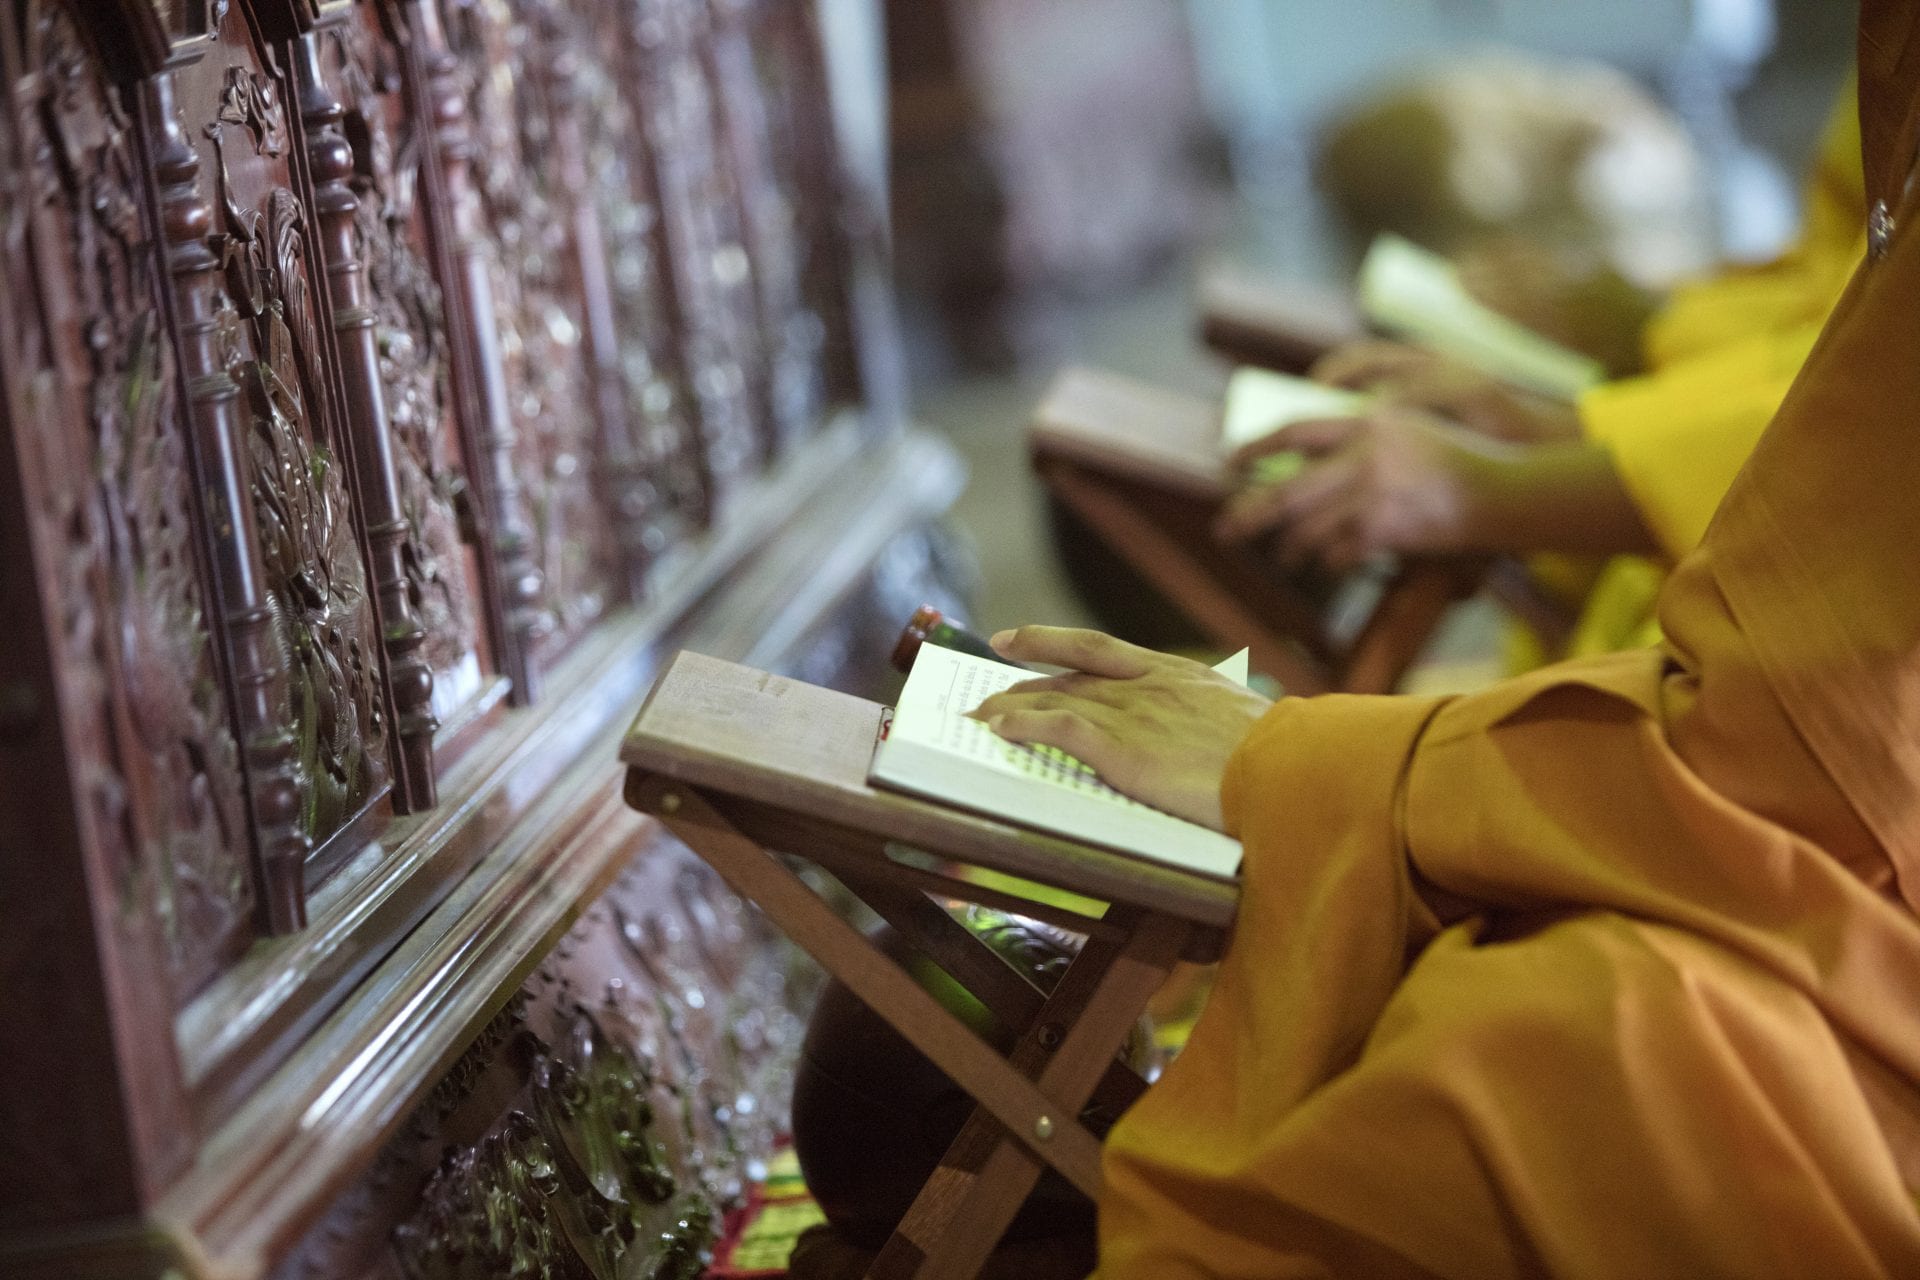 Buddhist Monks in prayer